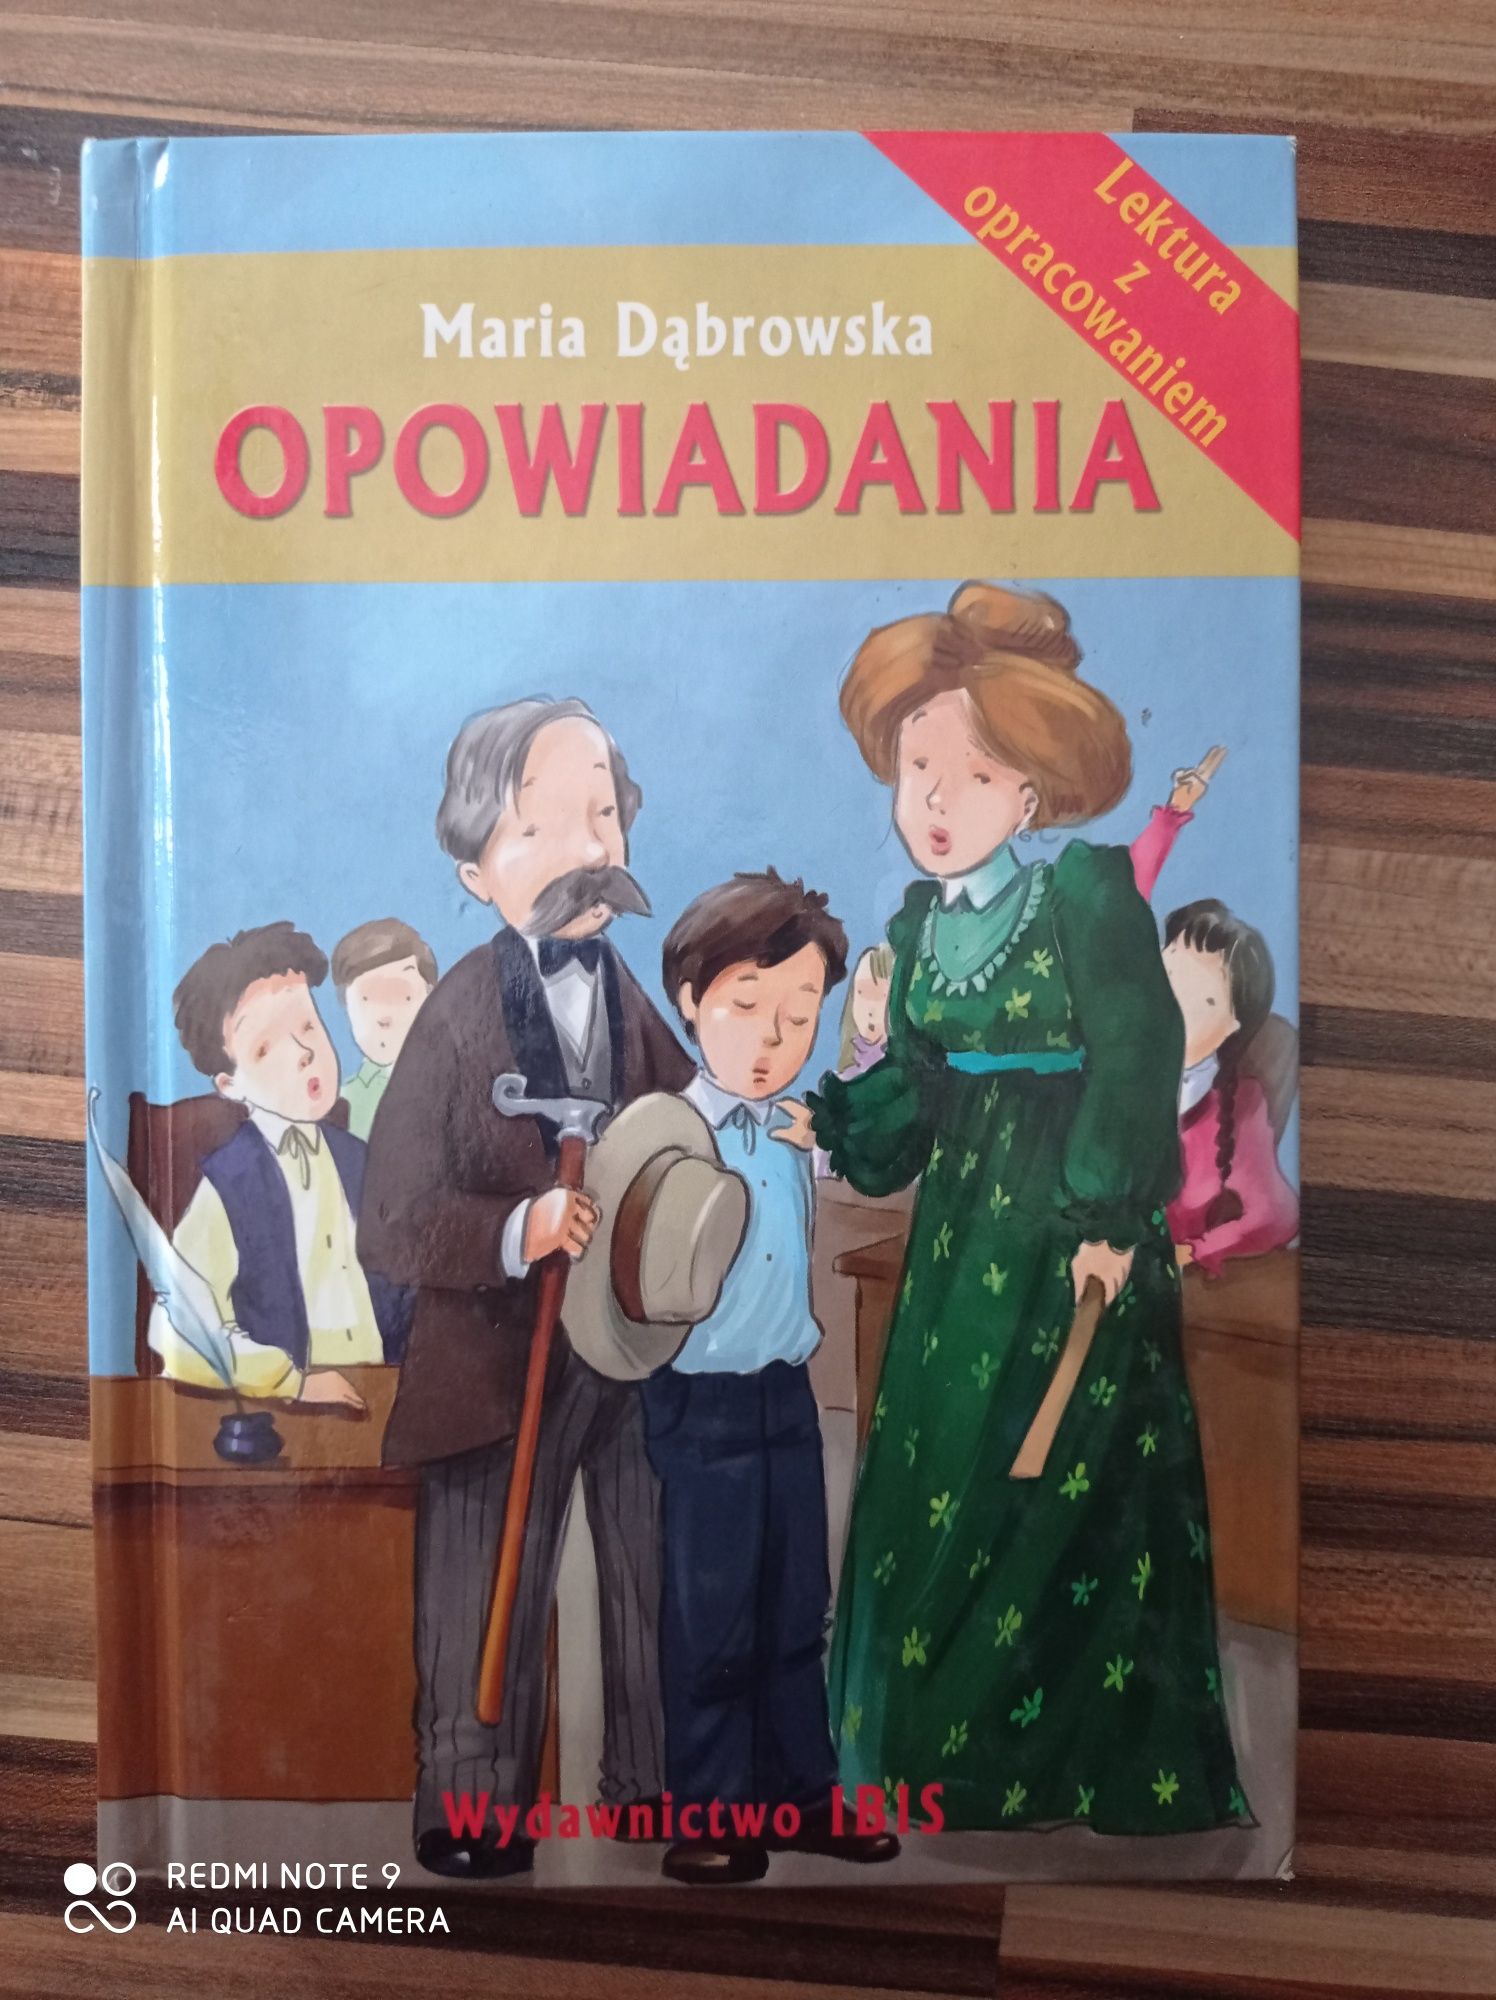 Maria Dąbrowska opowiadania wydawnictwo Ibis